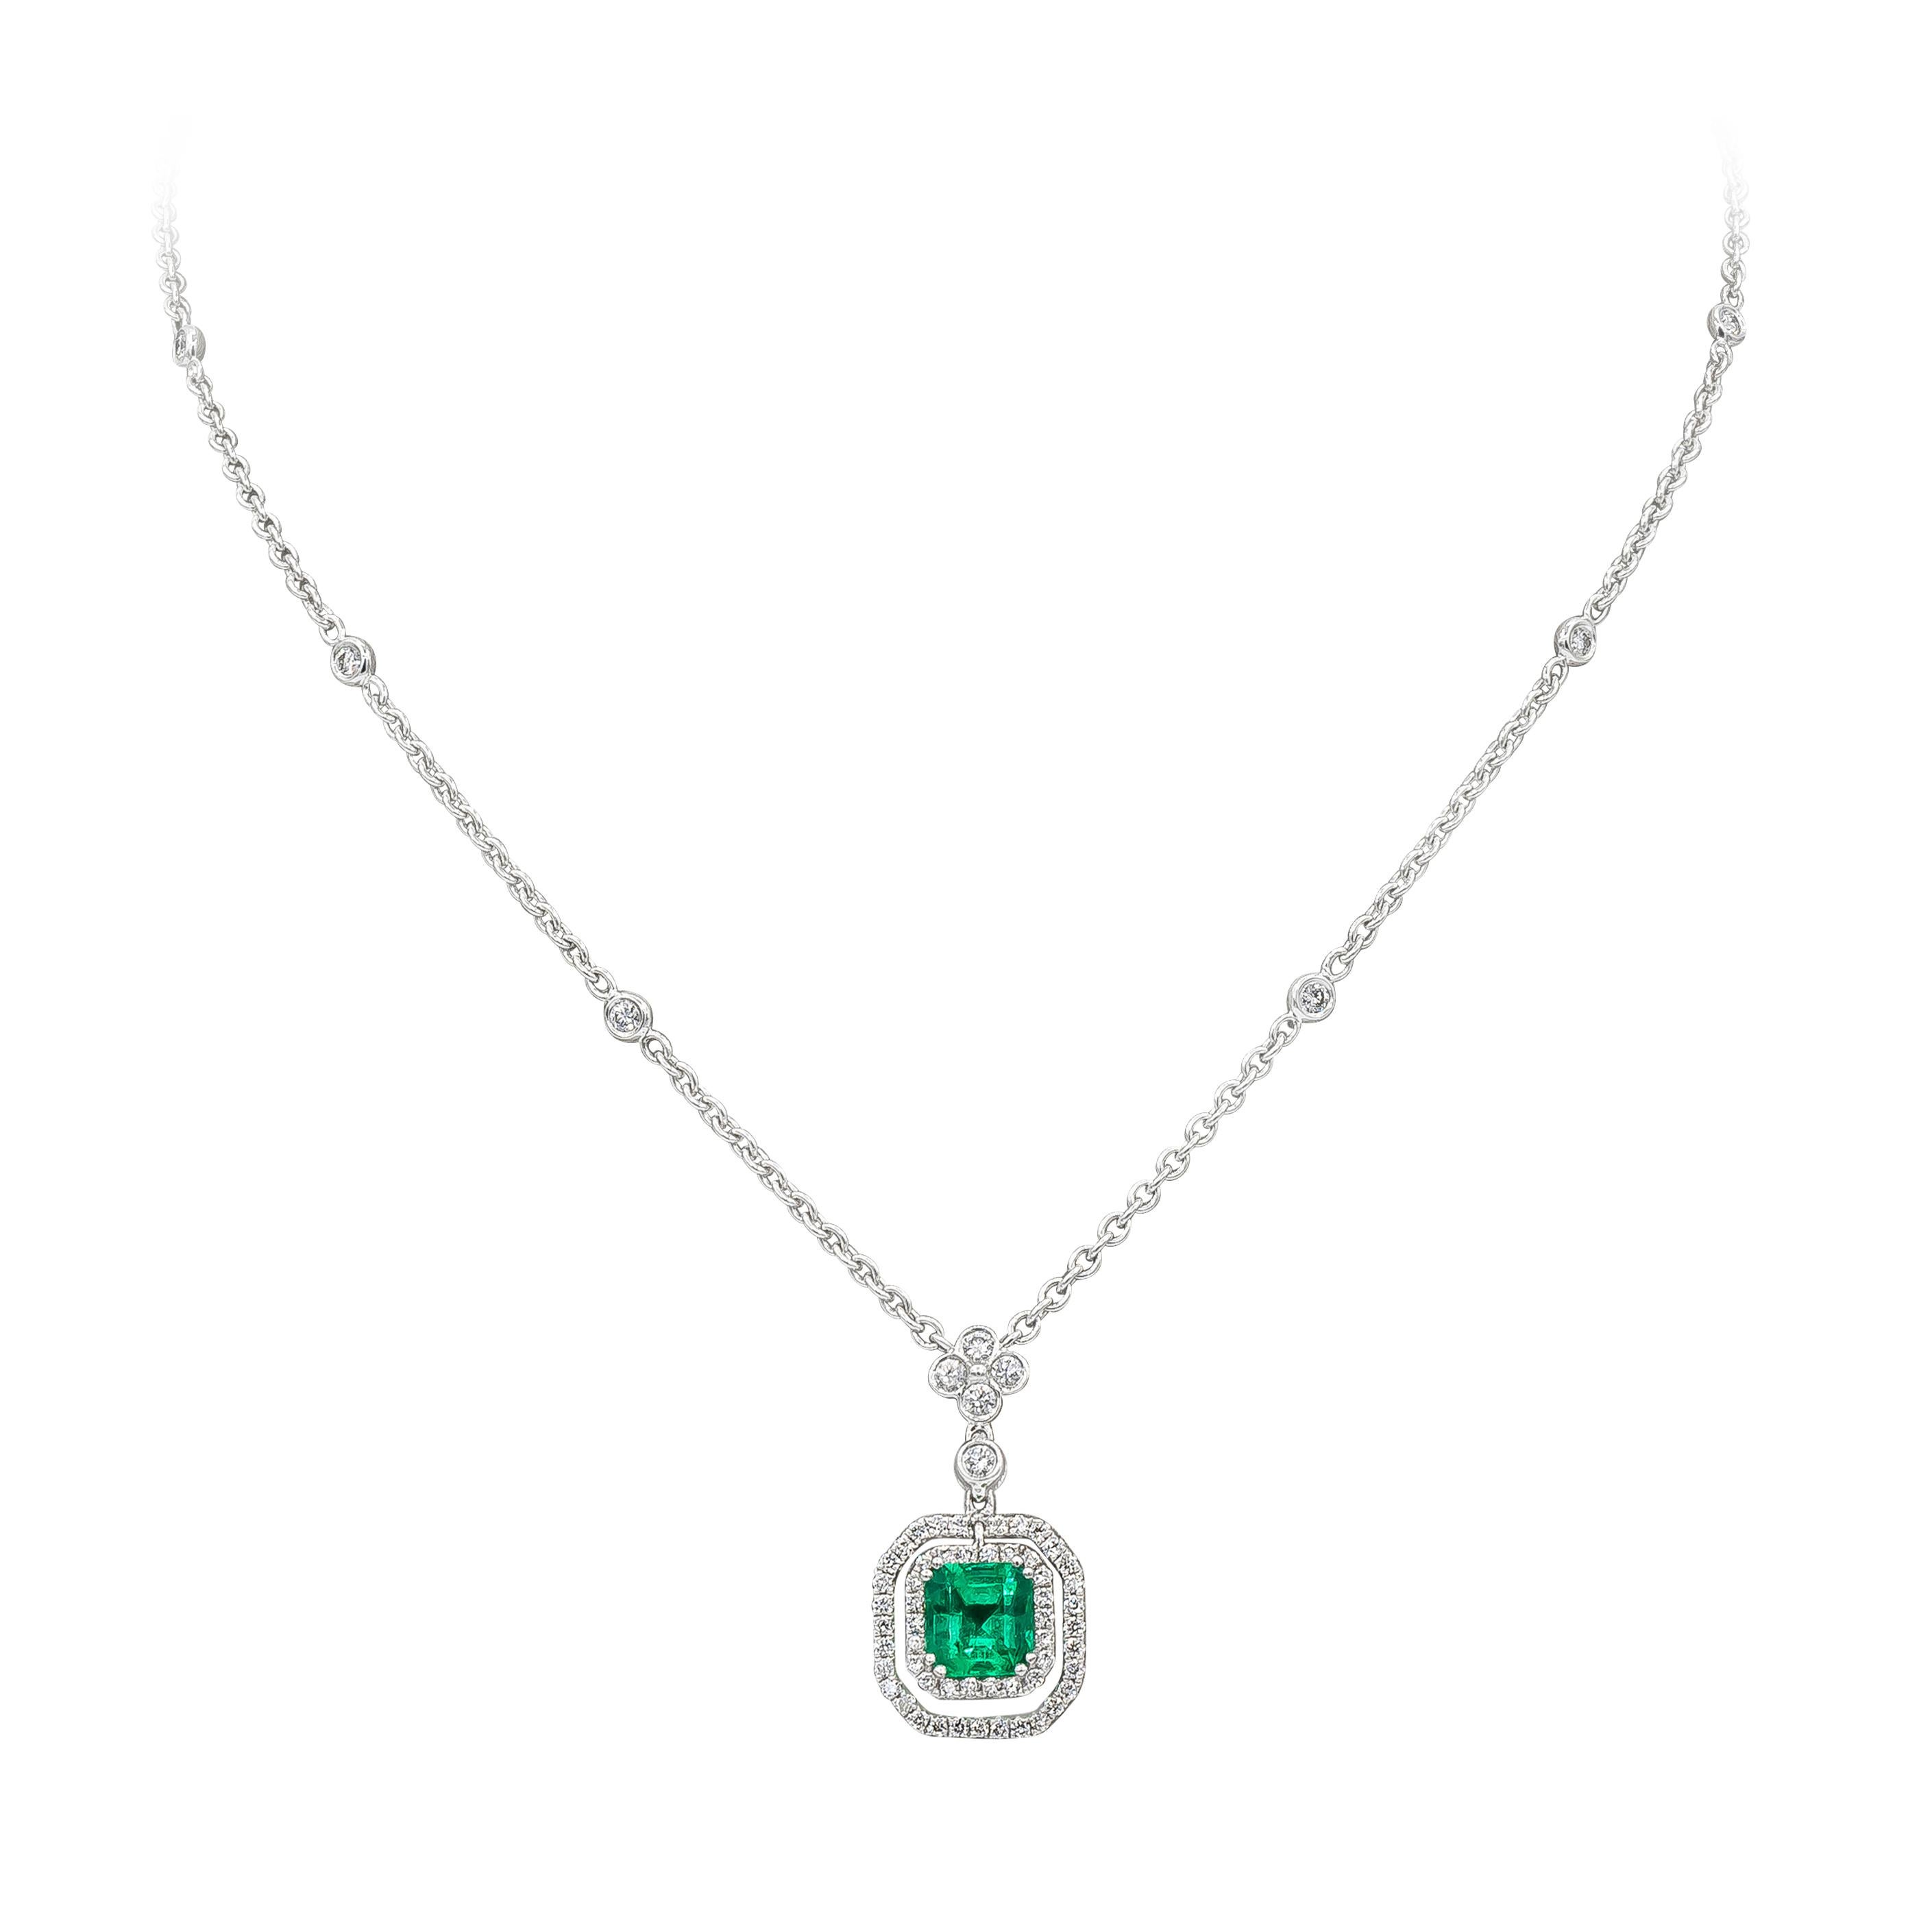 L'émeraude verte de 1,18 carat est sertie dans un magnifique double halo ajouré incrusté de diamants. Les diamants pèsent 0,71 carat au total. Les diamants se trouvent dans une chaîne de diamants par mètre. Fabriqué en or blanc 18 carats, 17 pouces